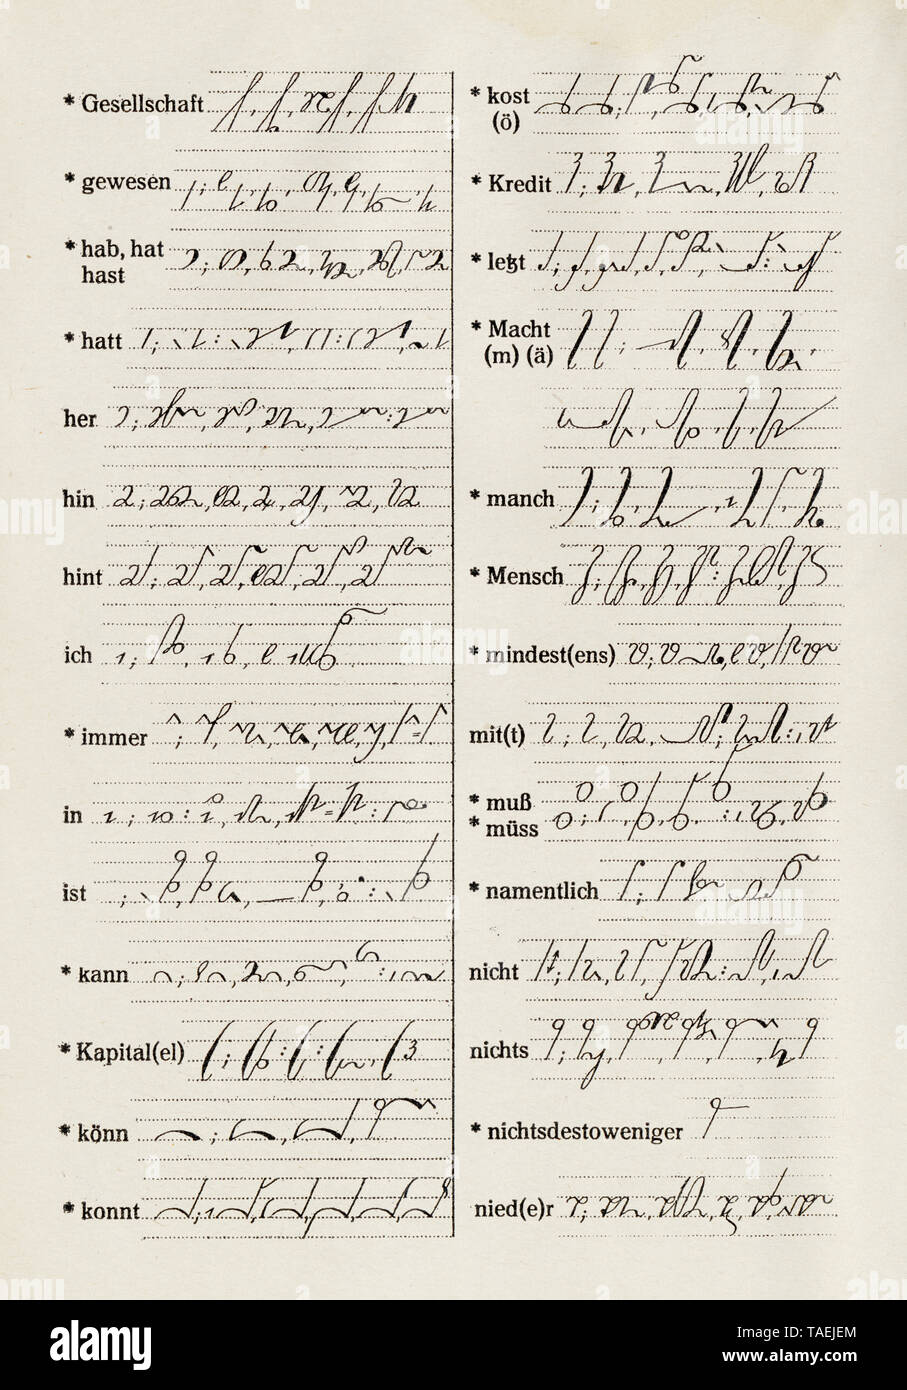 Libro di testo di stenografia, circa 1935, vista in dettaglio, Germania, Europa, dettaglio Lehrbuch für Stenografie, ca. 1935, Deutschland Foto Stock